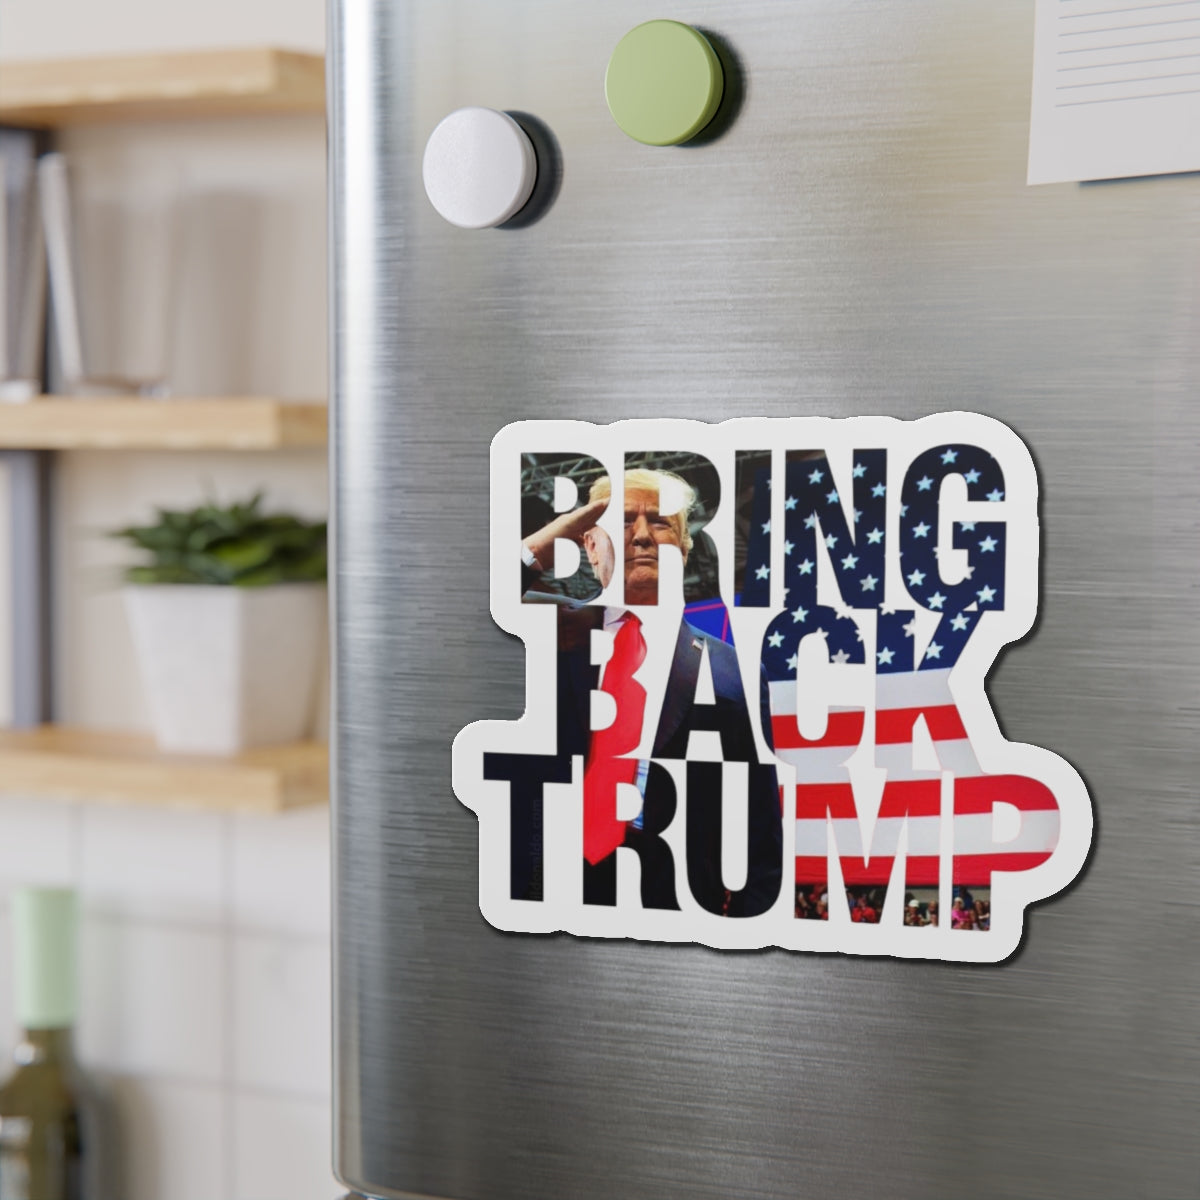 Robuste, wasserabweisende, gestanzte Magnete von „Bring Back Trump“.